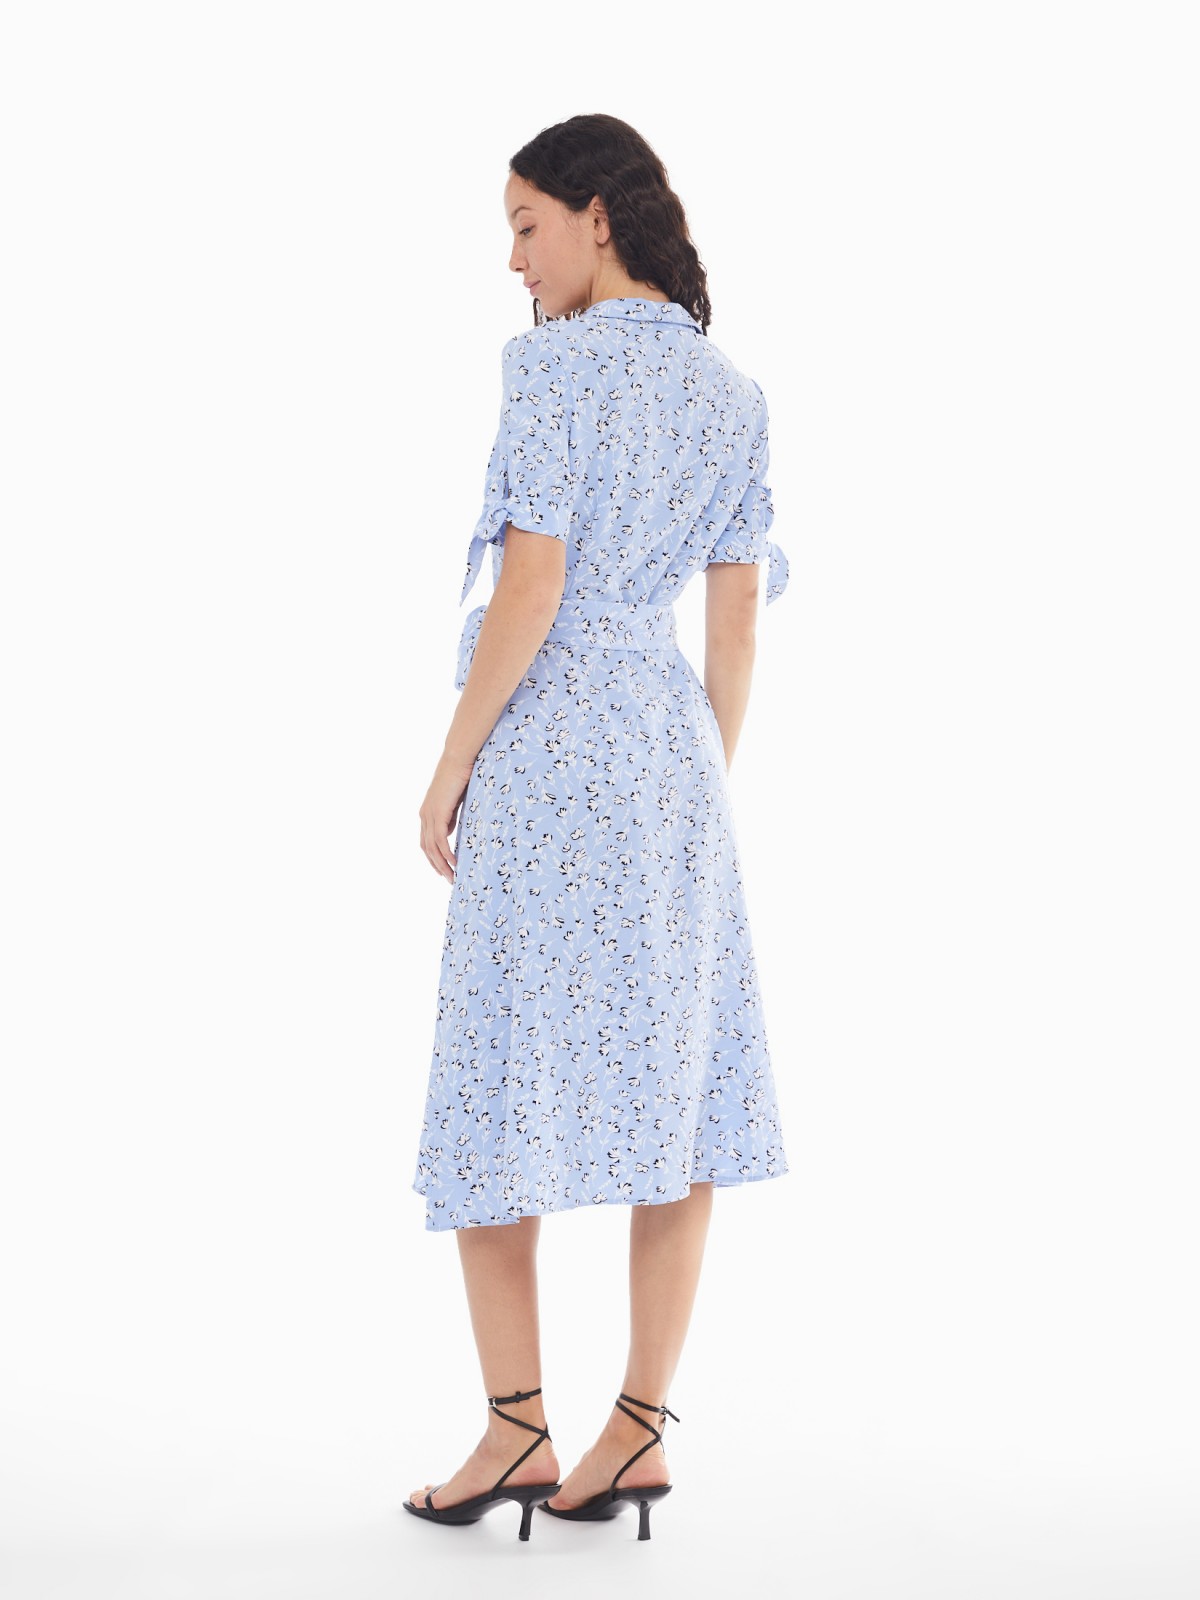 Платье-рубашка с поясом и акцентными короткими рукавами zolla 024138240412, цвет светло-голубой, размер XS - фото 6